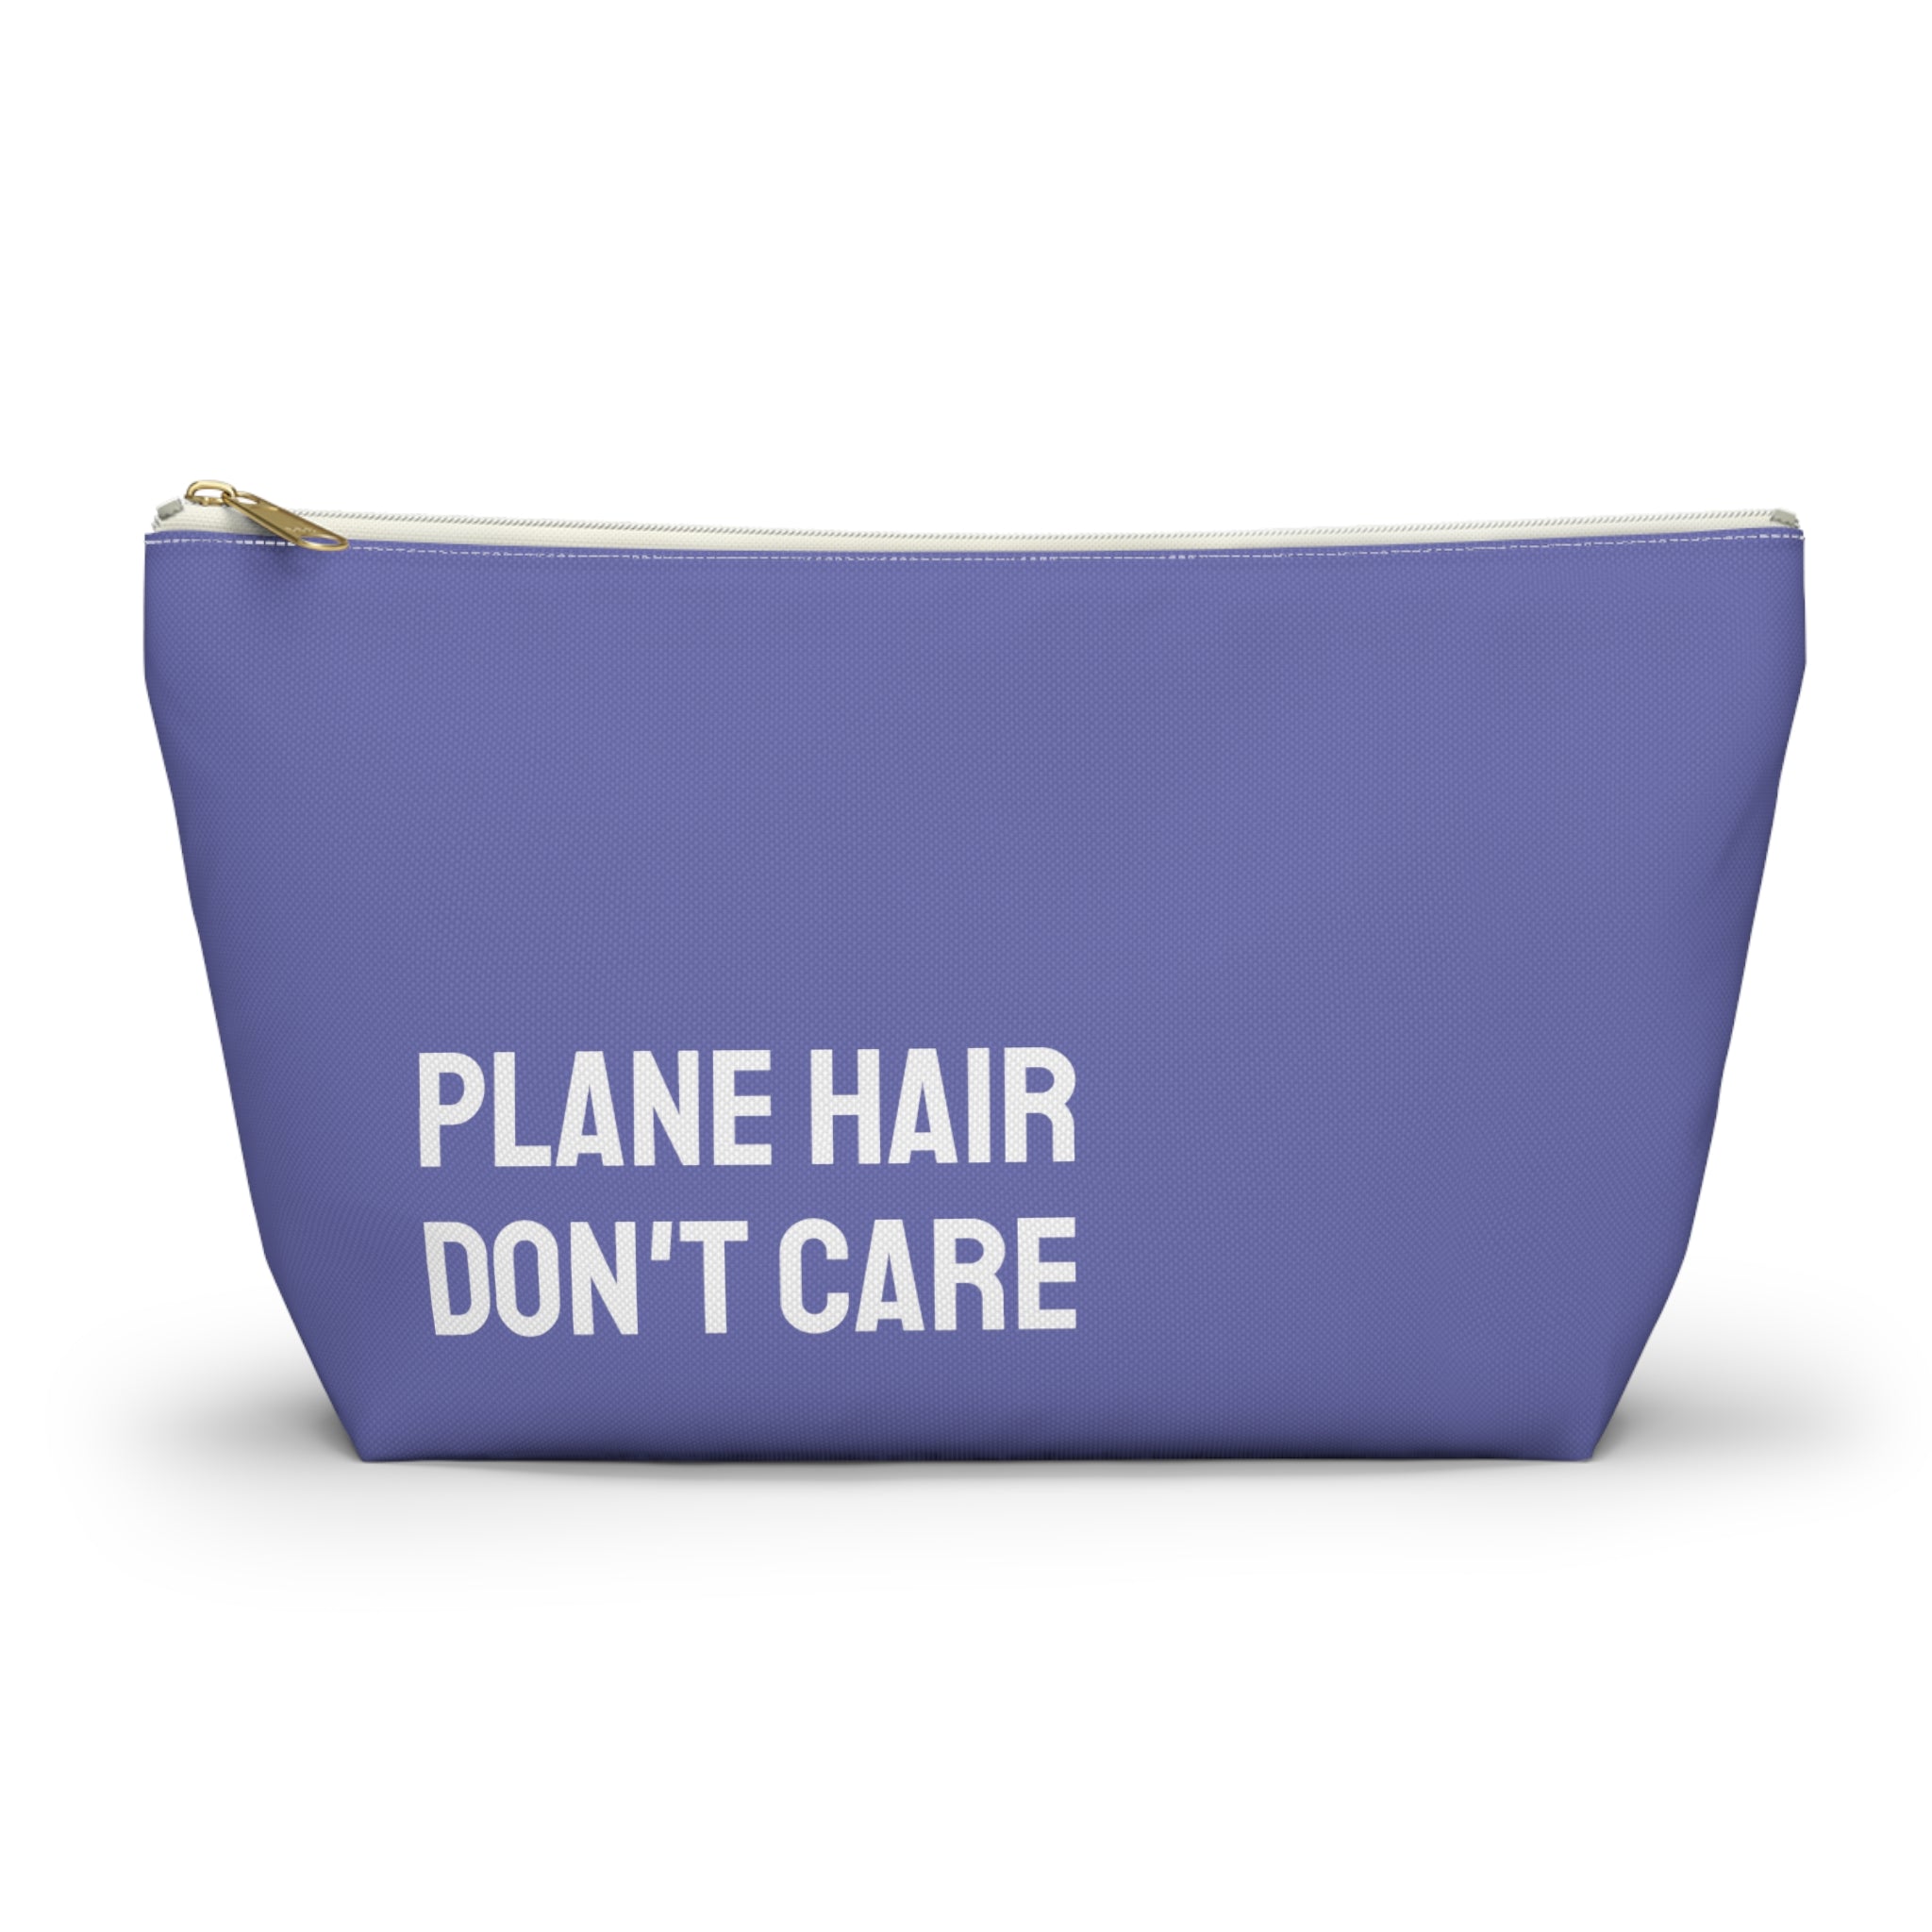 Plane hair don't care Pouch (Purple)